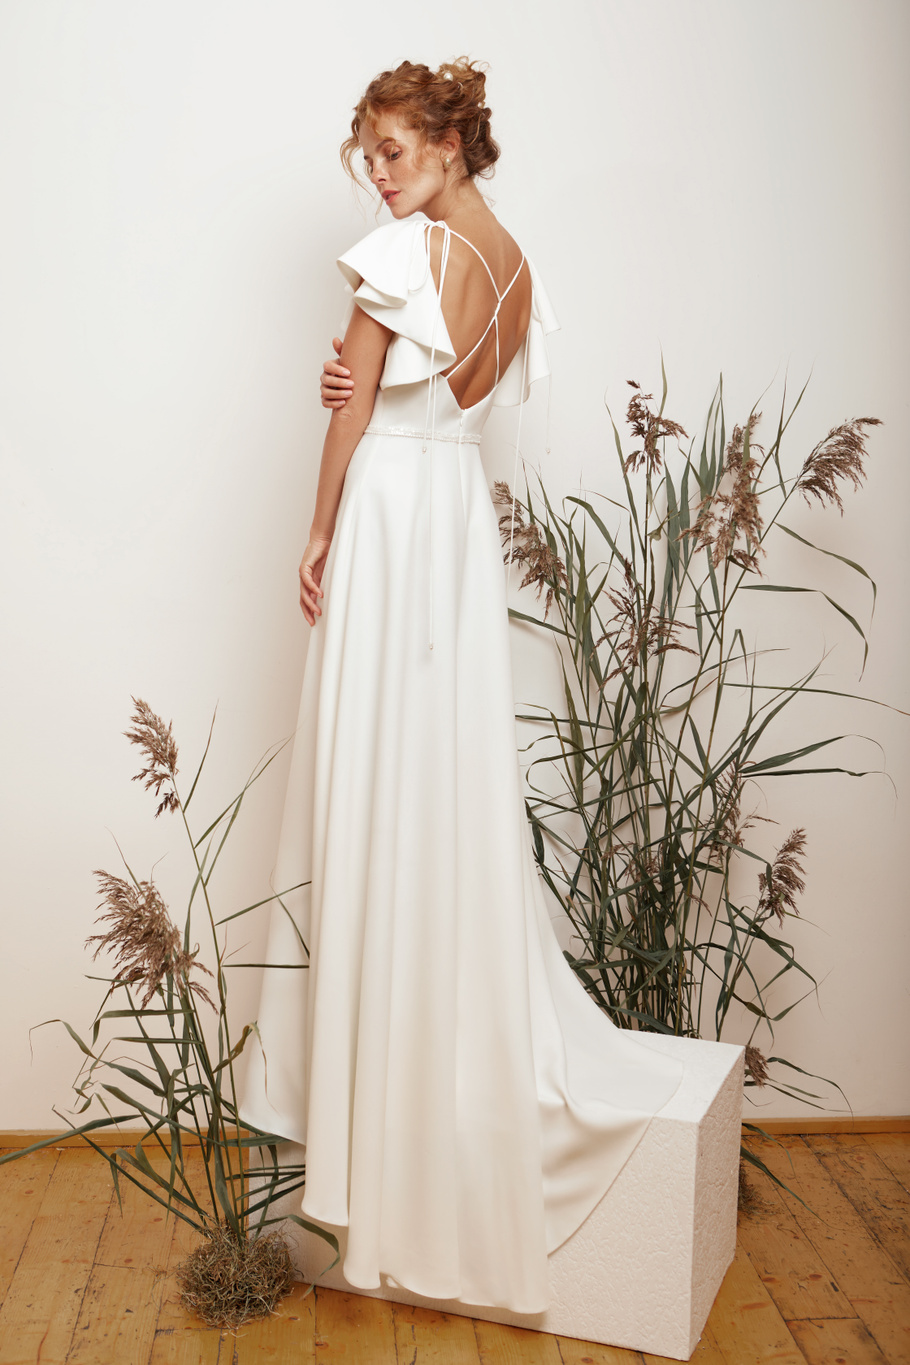 Купить свадебное платье «Ситлин» Мэрри Марк из коллекции 2020 года в Краснодаре